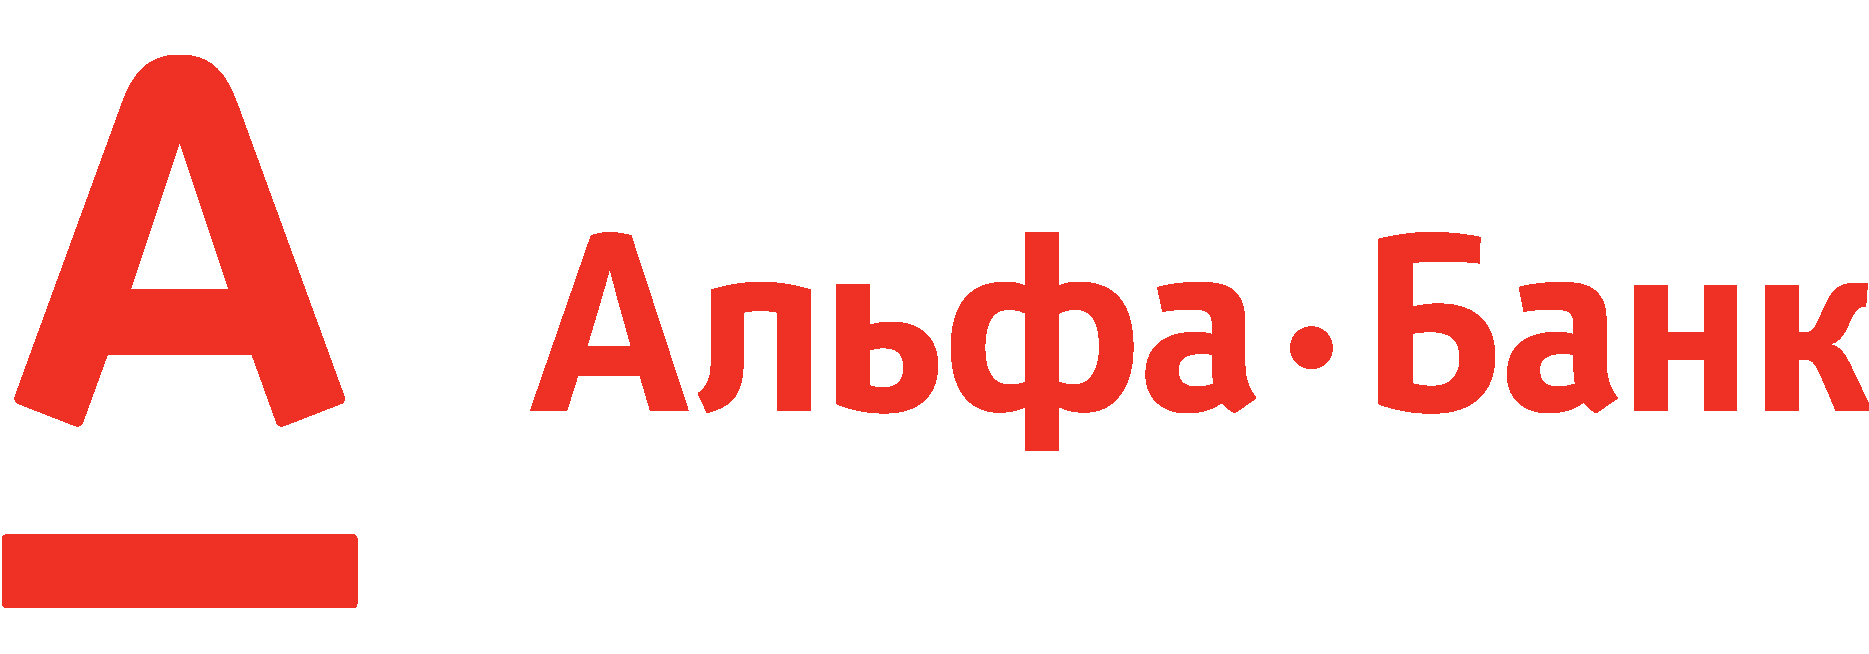 Файл:Альфа-банк Україна.png — Википедия